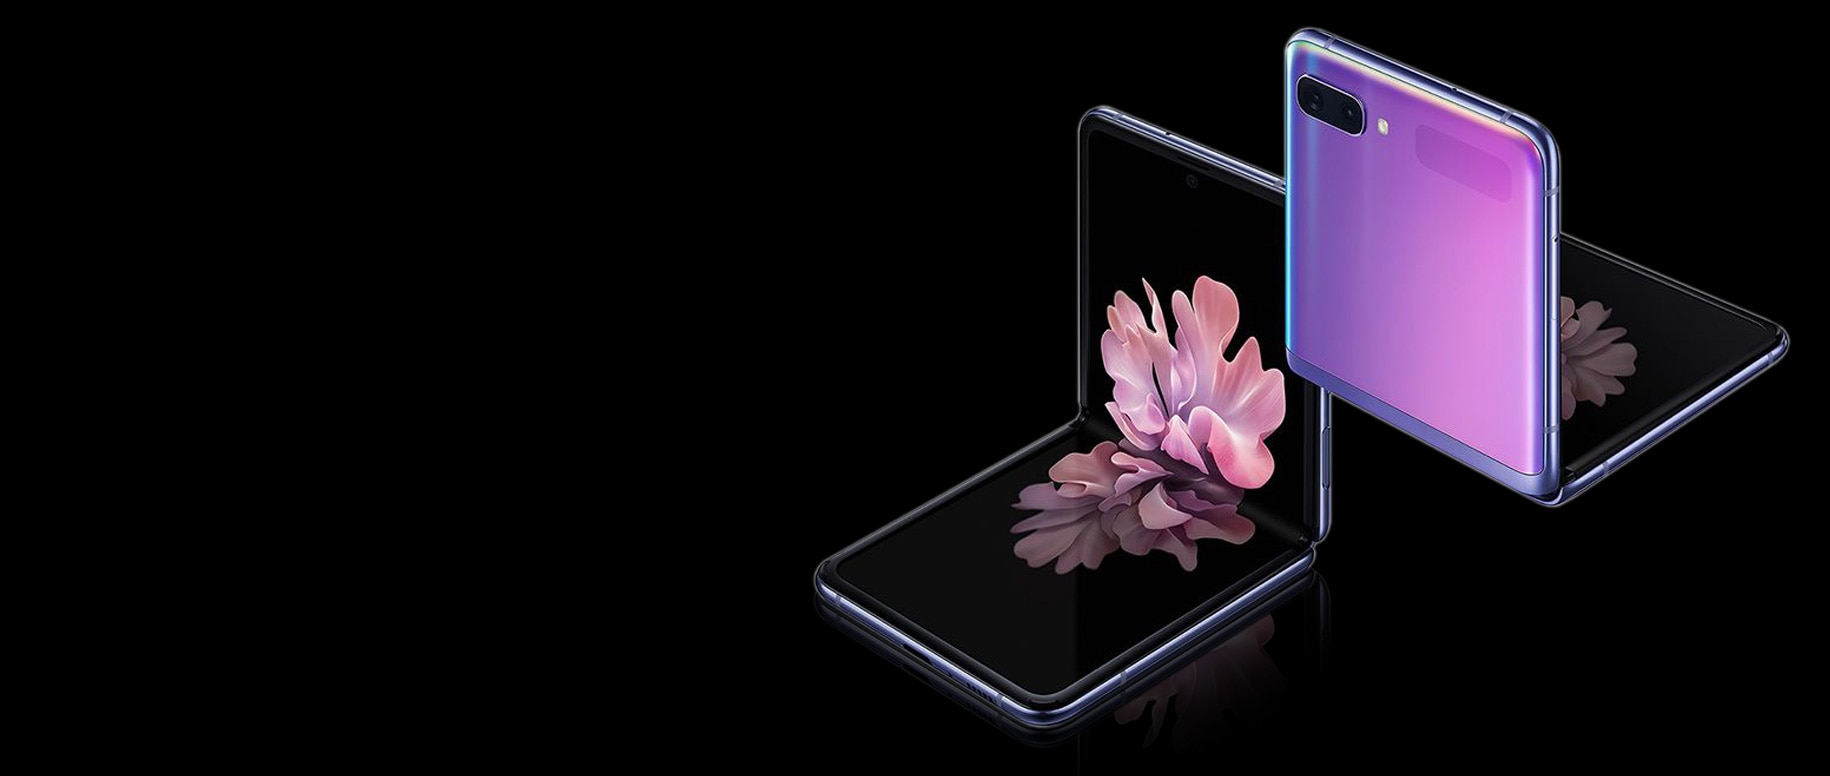 Dva telefony Galaxy Z Flip v Mirror Purple pod úhlem tří čtvrtin, jeden zepředu a druhý zezadu. Oba jsou sklopeny do pravého úhlu s volným dorazem. Ten, který je vidět zepředu, má na obrazovce rozkvetlou květinovou tapetu